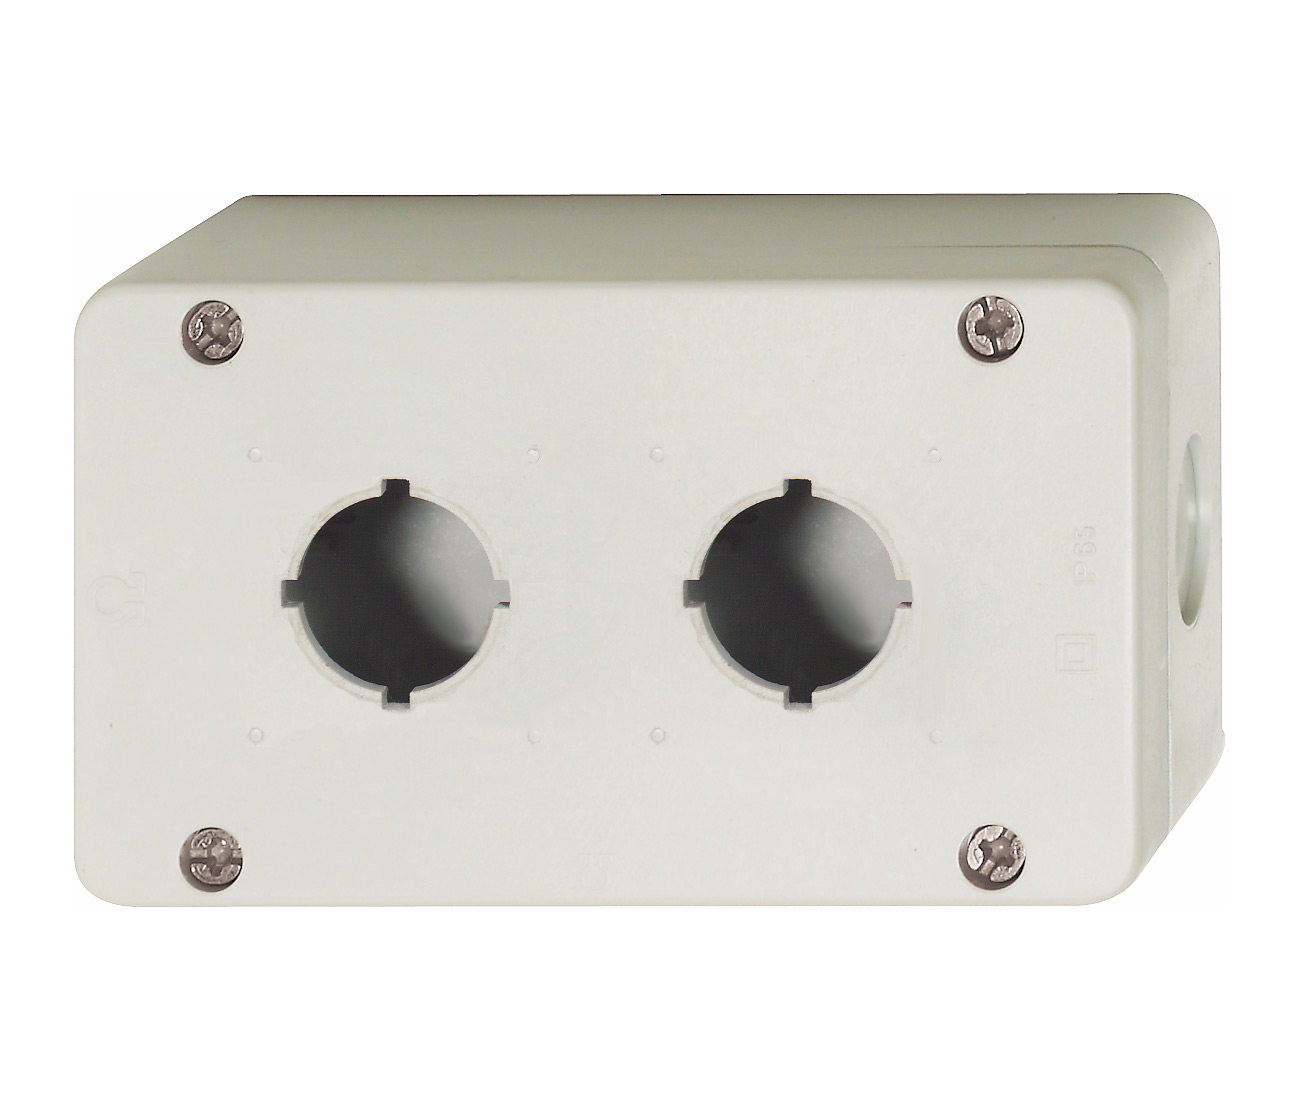 Пластиковый корпус BG, IP67 для 2 кнопок/ламп серии B3, серый, 3 ввода ∅20,5мм BG2 Benedict